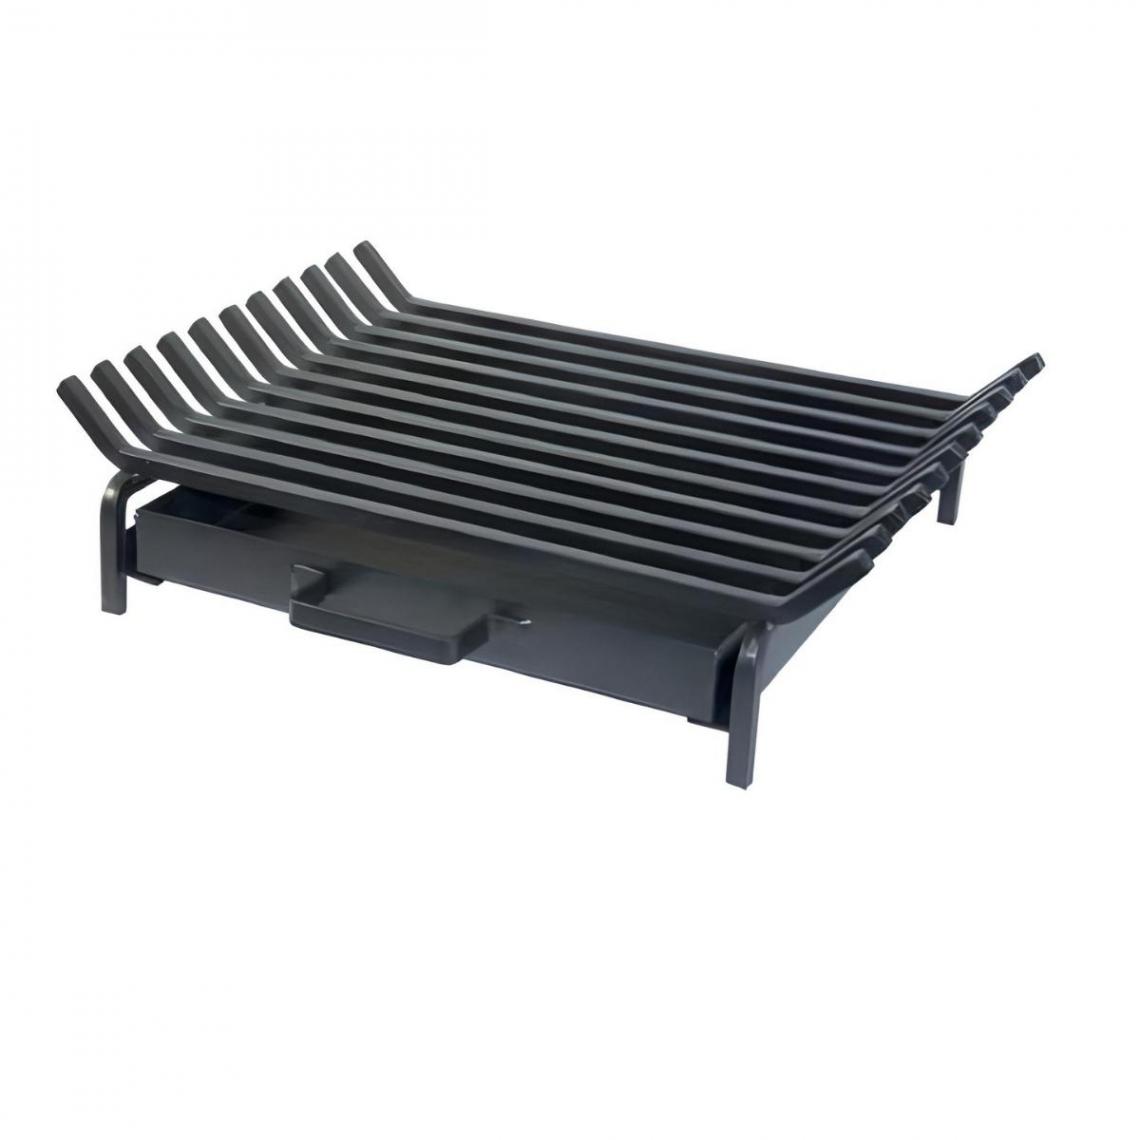 Visiodirect - Grille horizontal avec tiroir coloris Noir - 50 x 40 cm - Accessoires barbecue